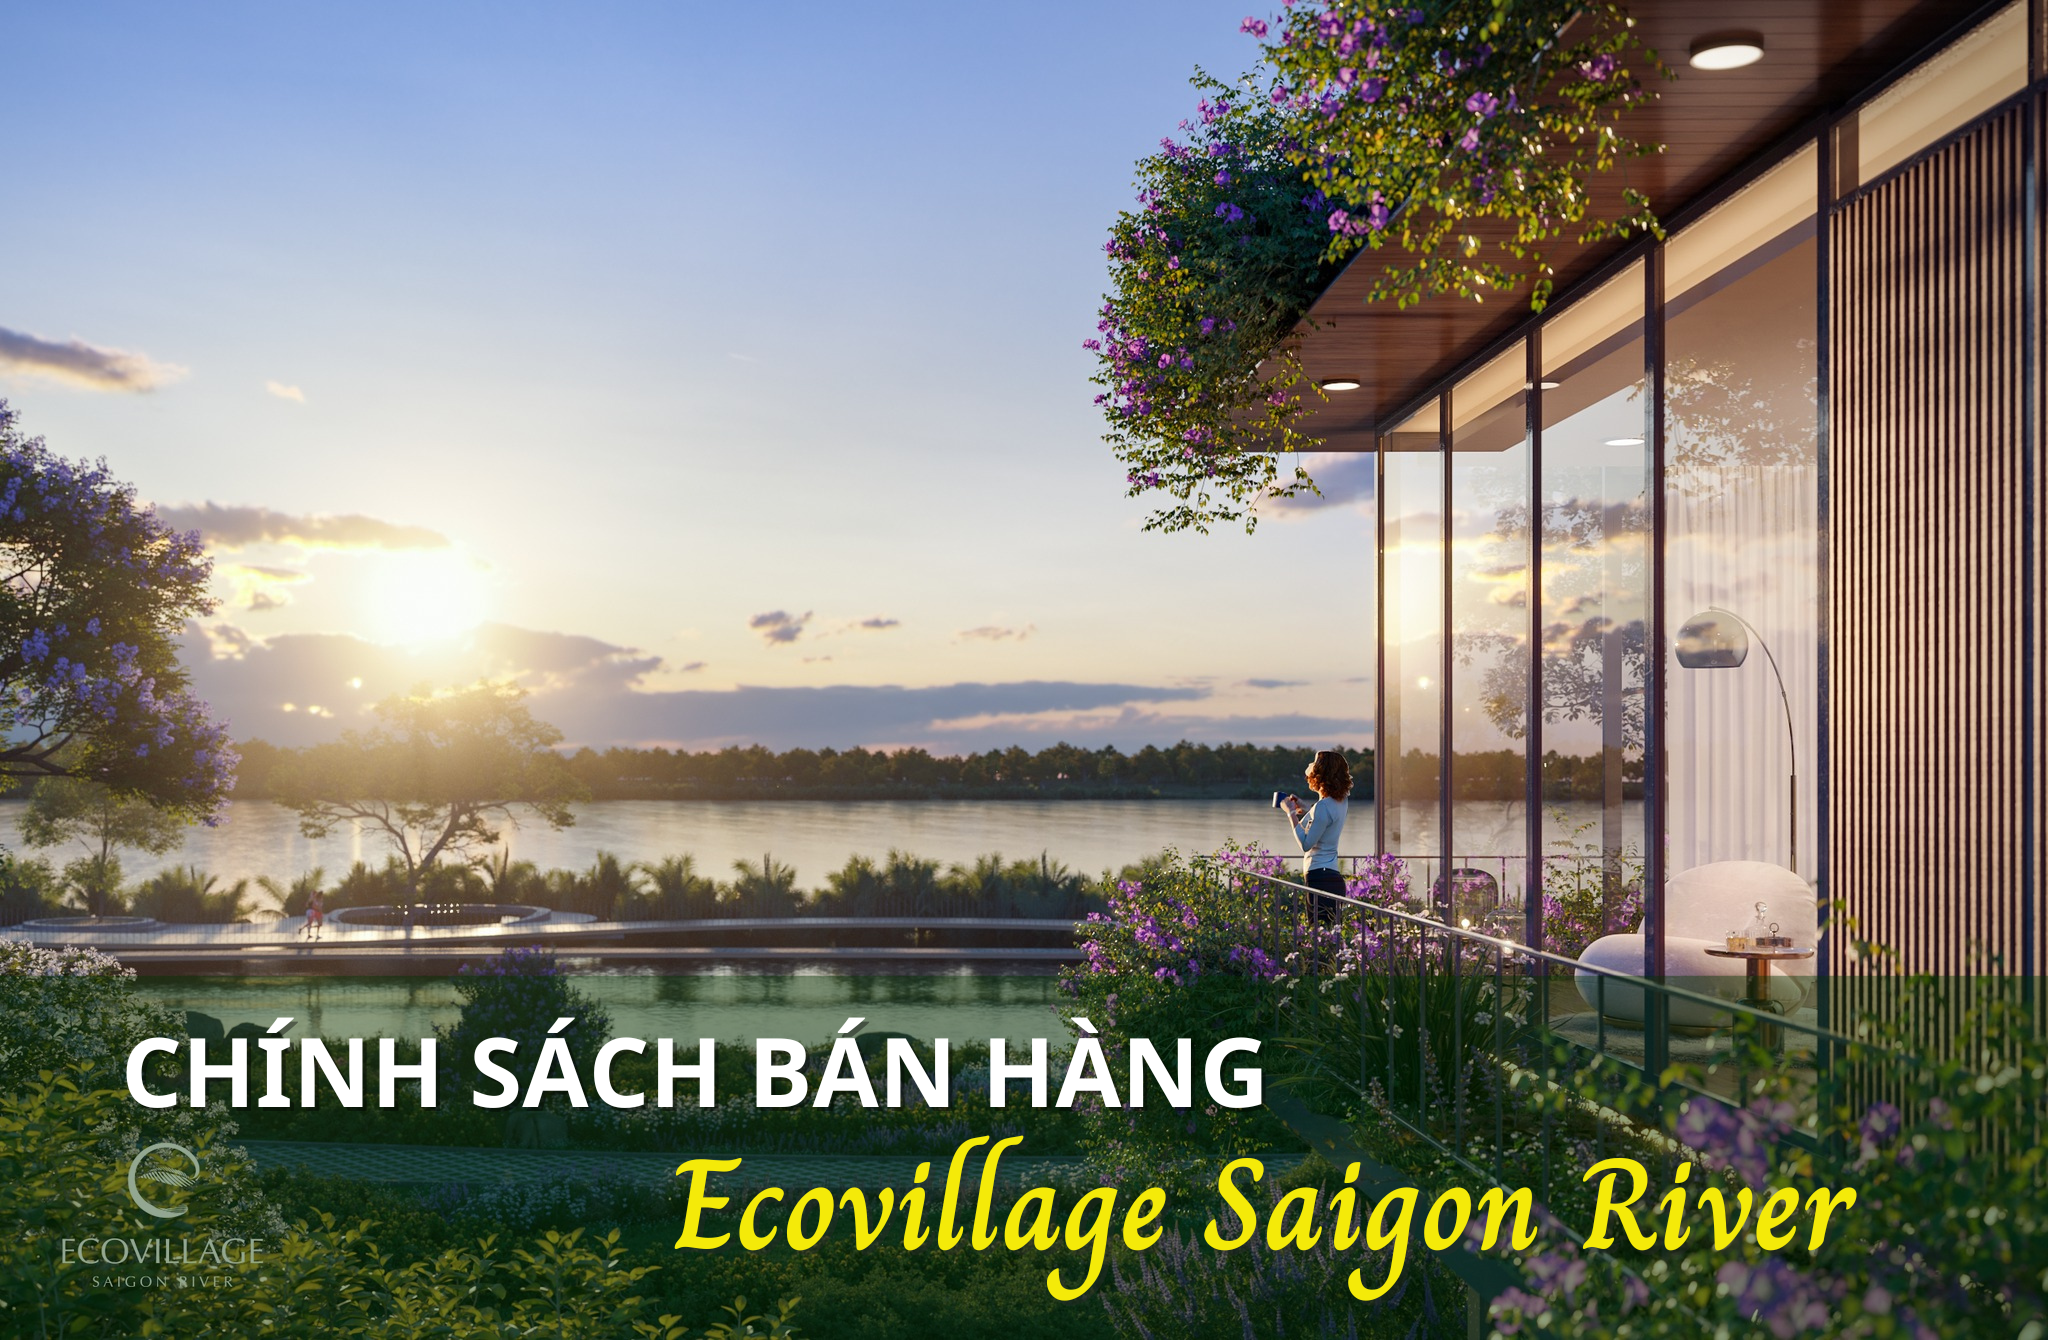 Chính sách bán hàng Ecovillage Saigon River đang áp dụng